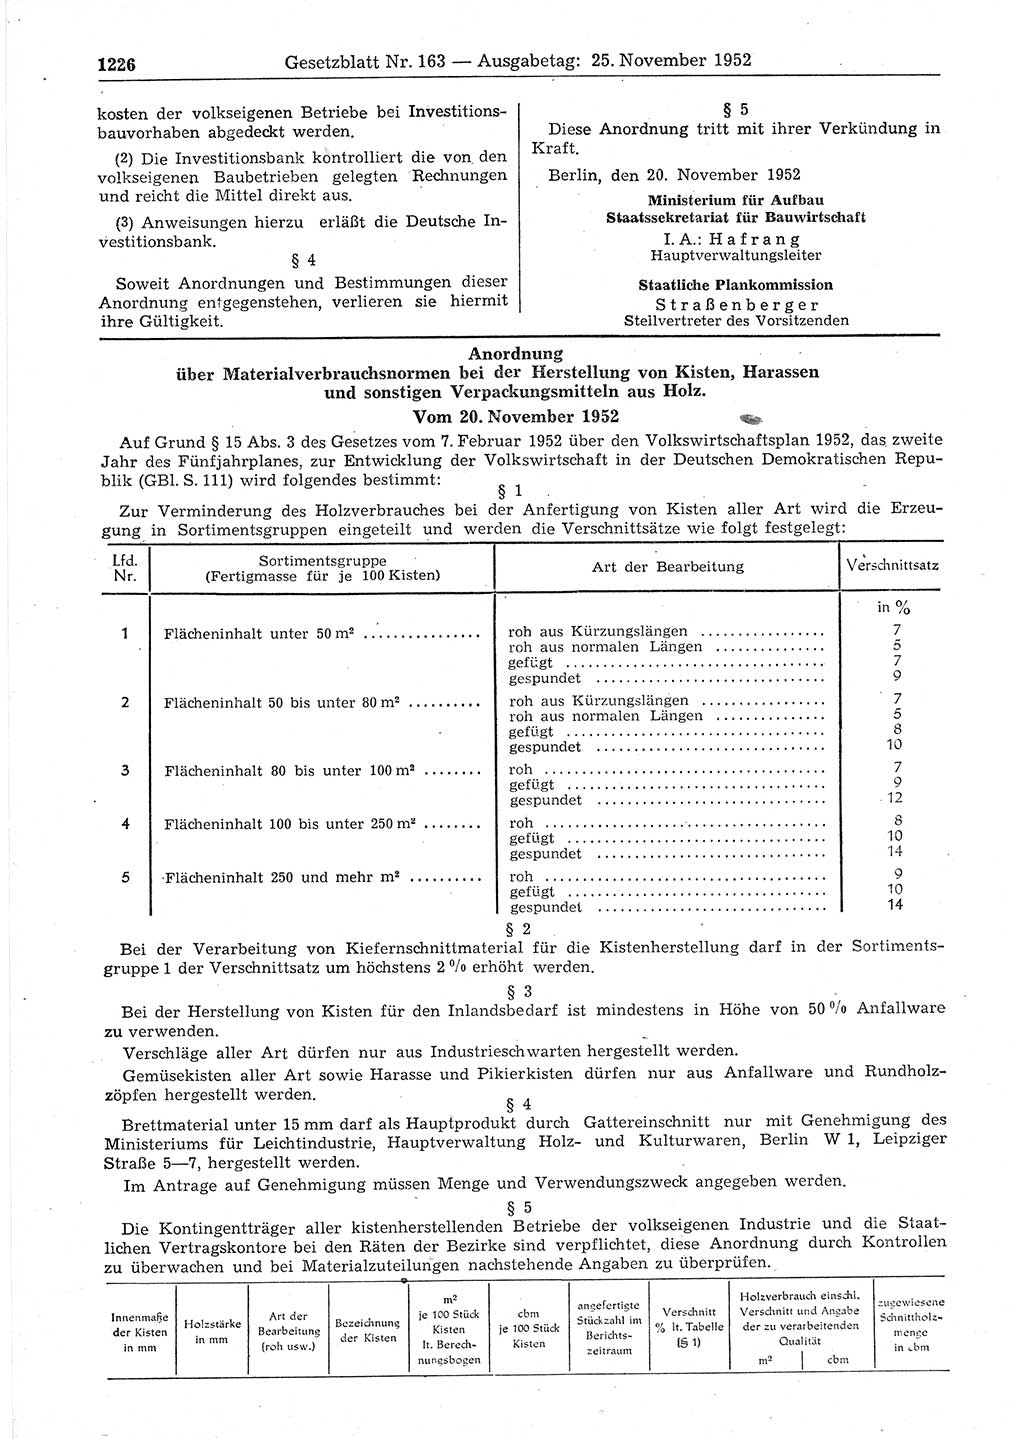 Gesetzblatt (GBl.) der Deutschen Demokratischen Republik (DDR) 1952, Seite 1226 (GBl. DDR 1952, S. 1226)